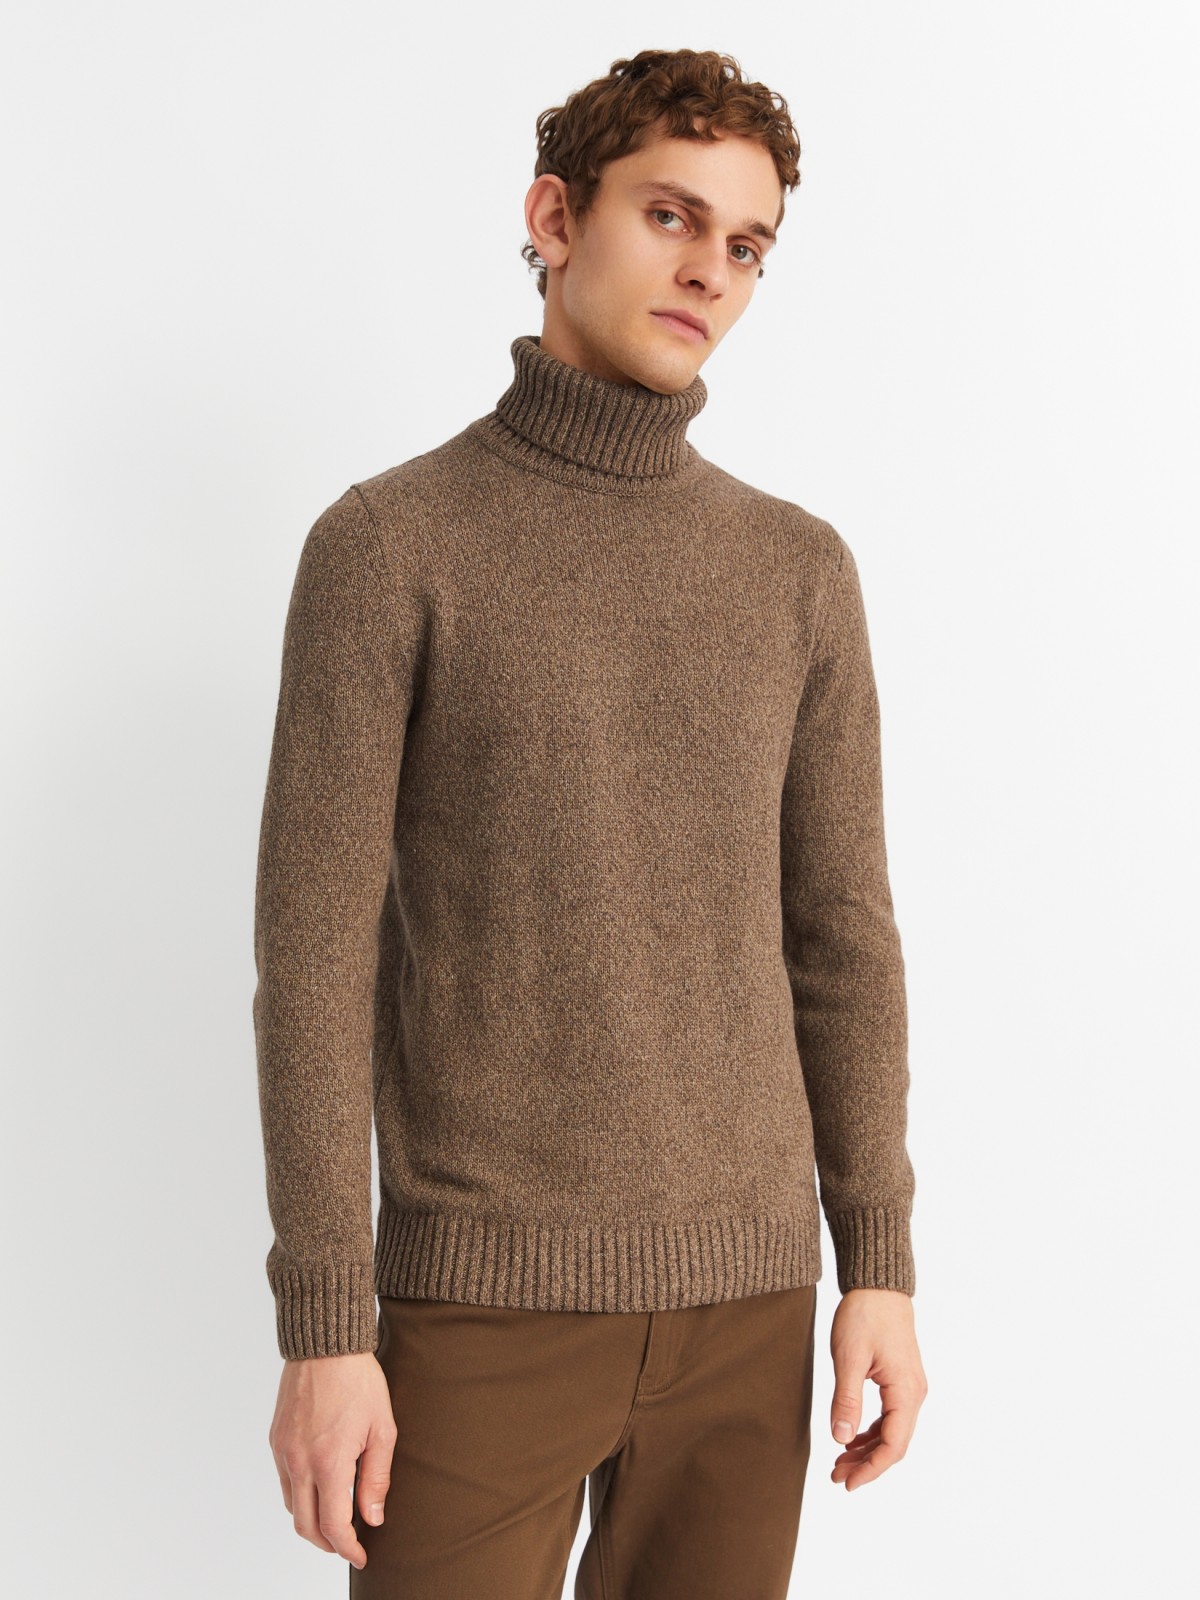 Вязаная шерстяная водолазка-свитер с горлом zolla коричневого цвета